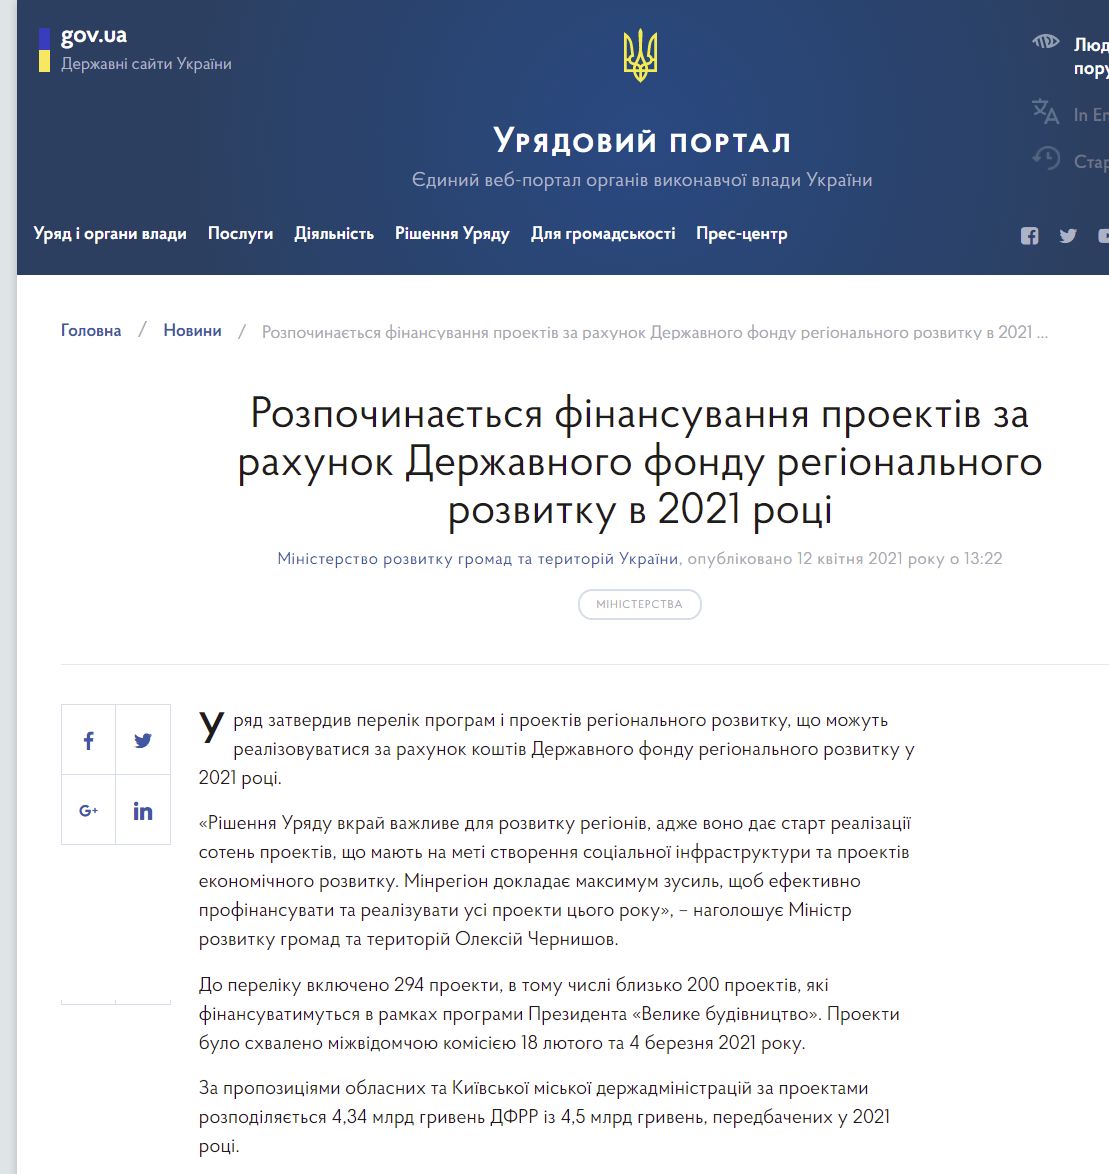 https://www.kmu.gov.ua/news/rozpochinayetsya-finansuvannya-proektiv-za-rahunok-derzhavnogo-fondu-regionalnogo-rozvitku-v-2021-roci